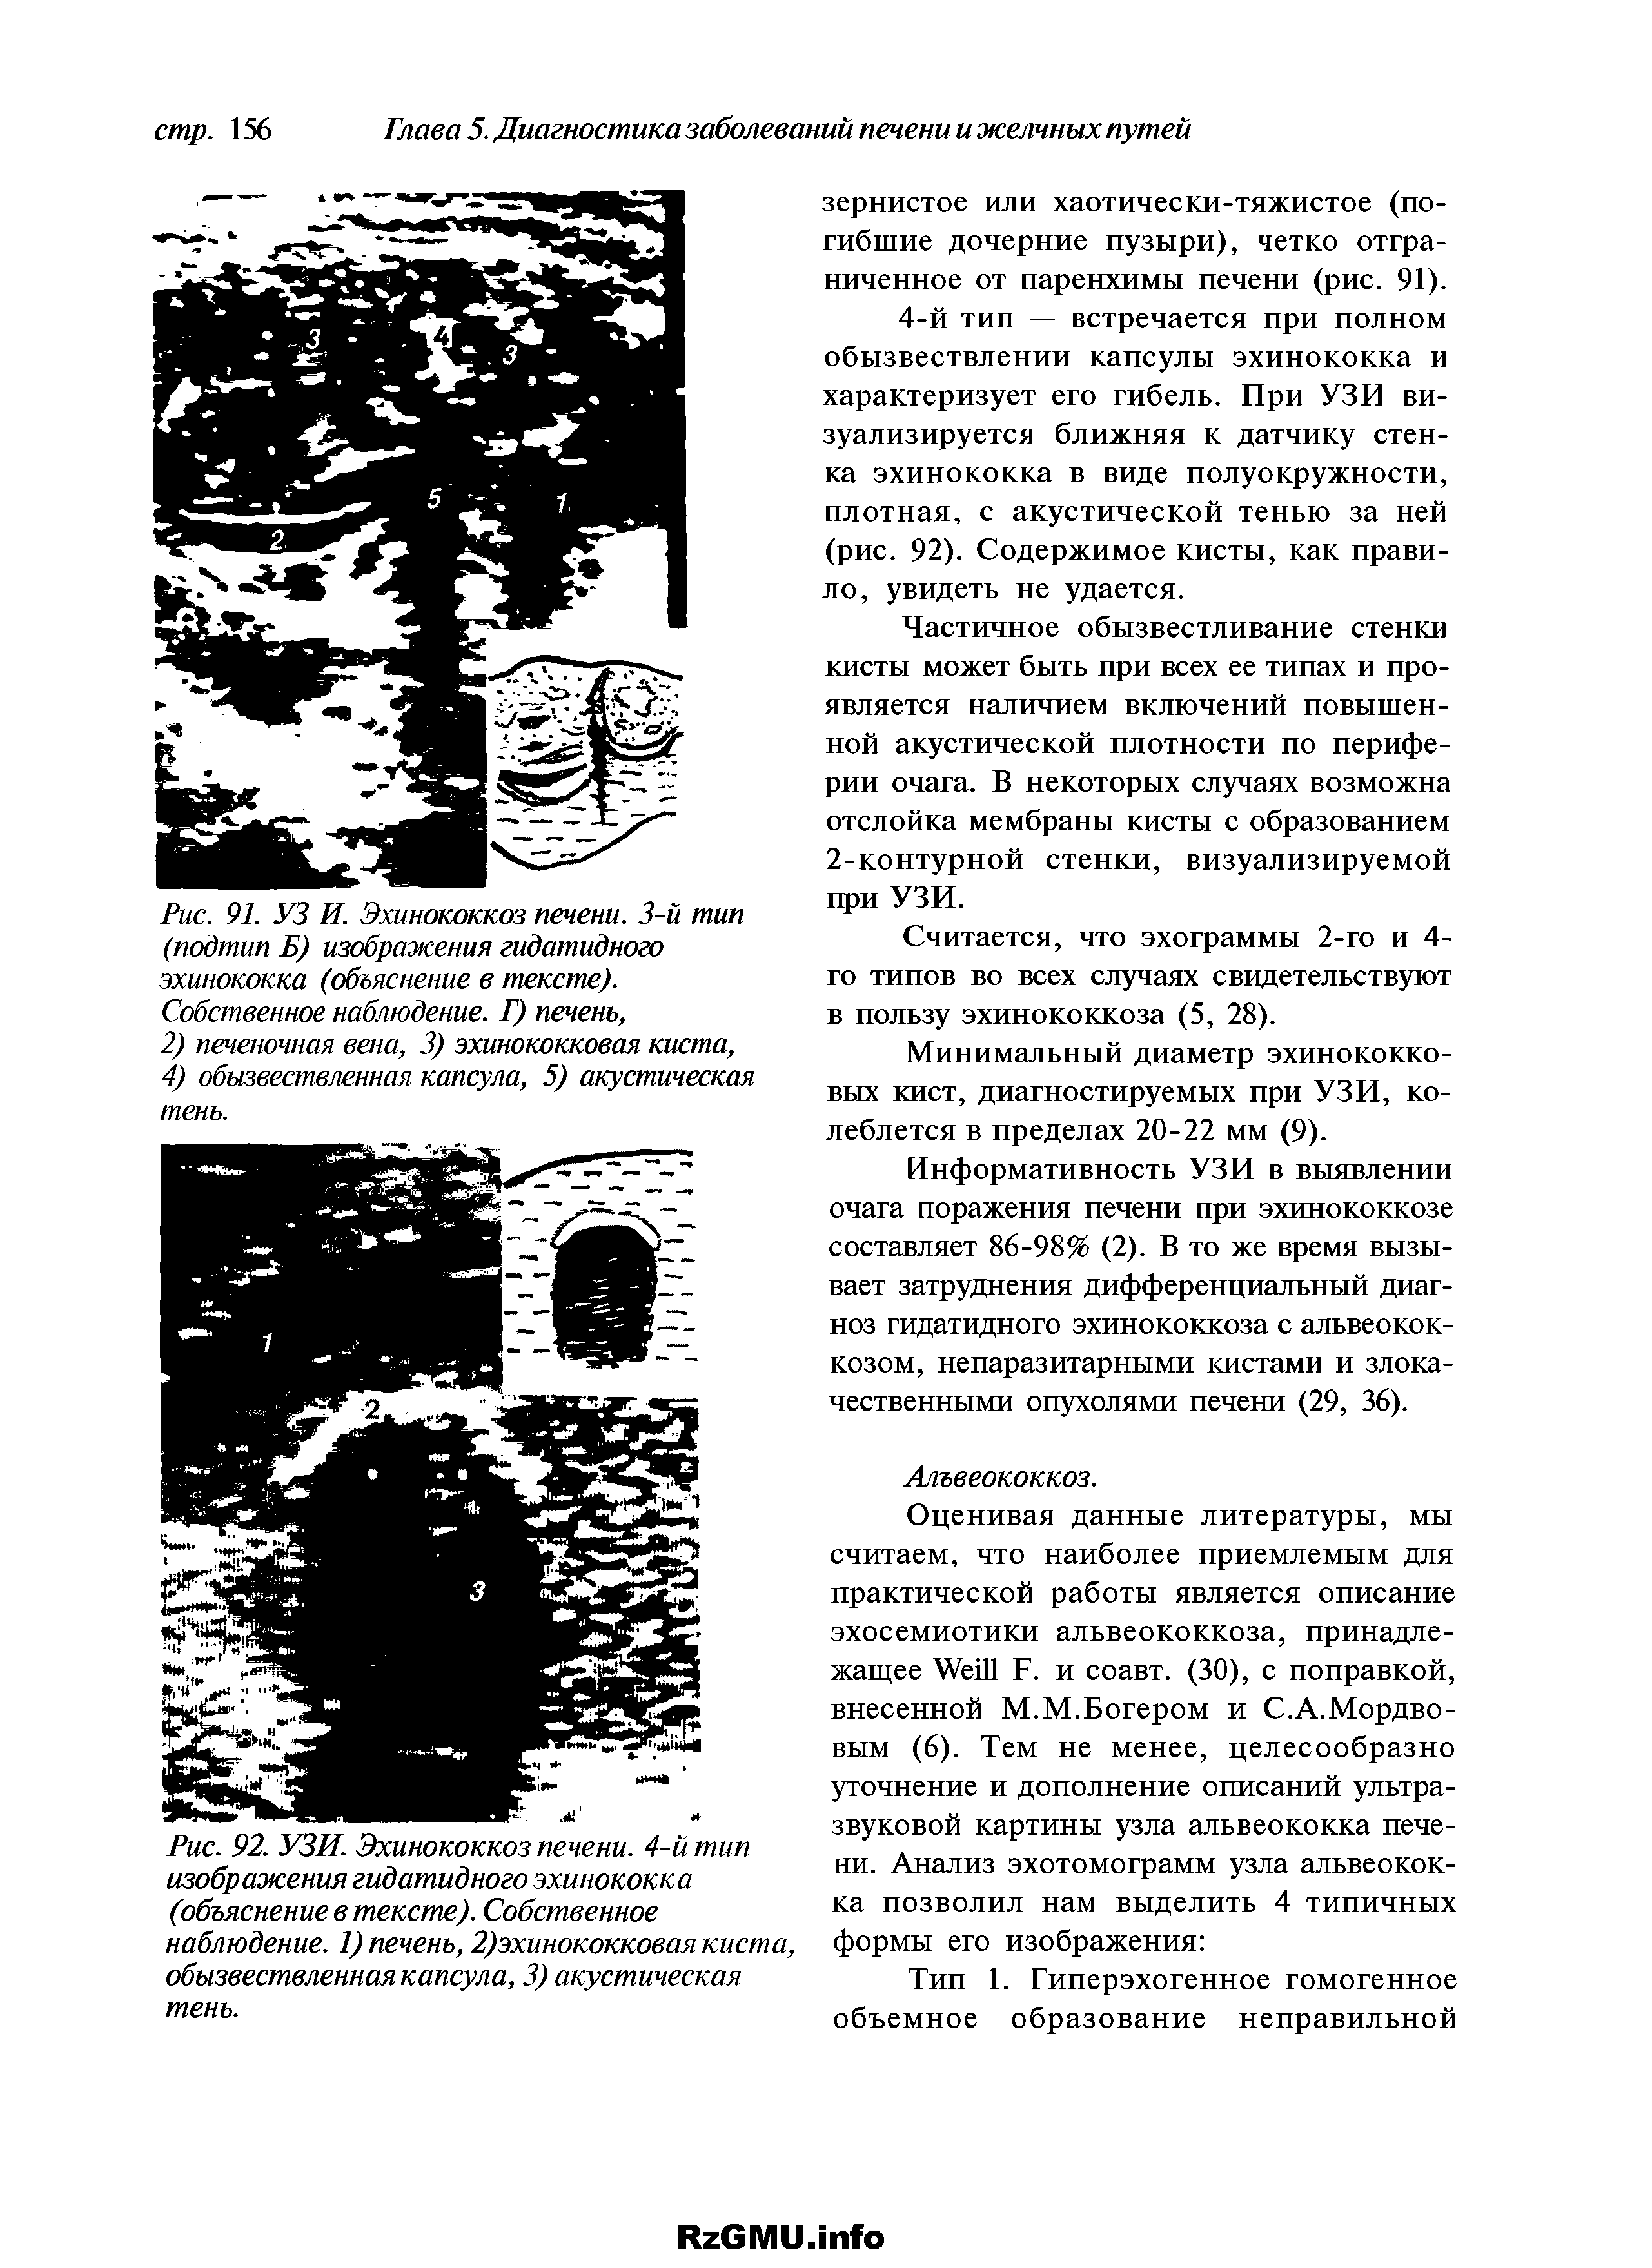 Рис. 92. УЗИ. Эхинококкоз печени. 4-й тип изображения гидатидного эхинококка (объяснение в тексте). Собственное наблюдение. 1) печень, 2)эхинококковая киста, обызвествленная капсула, 3) акустическая тень.